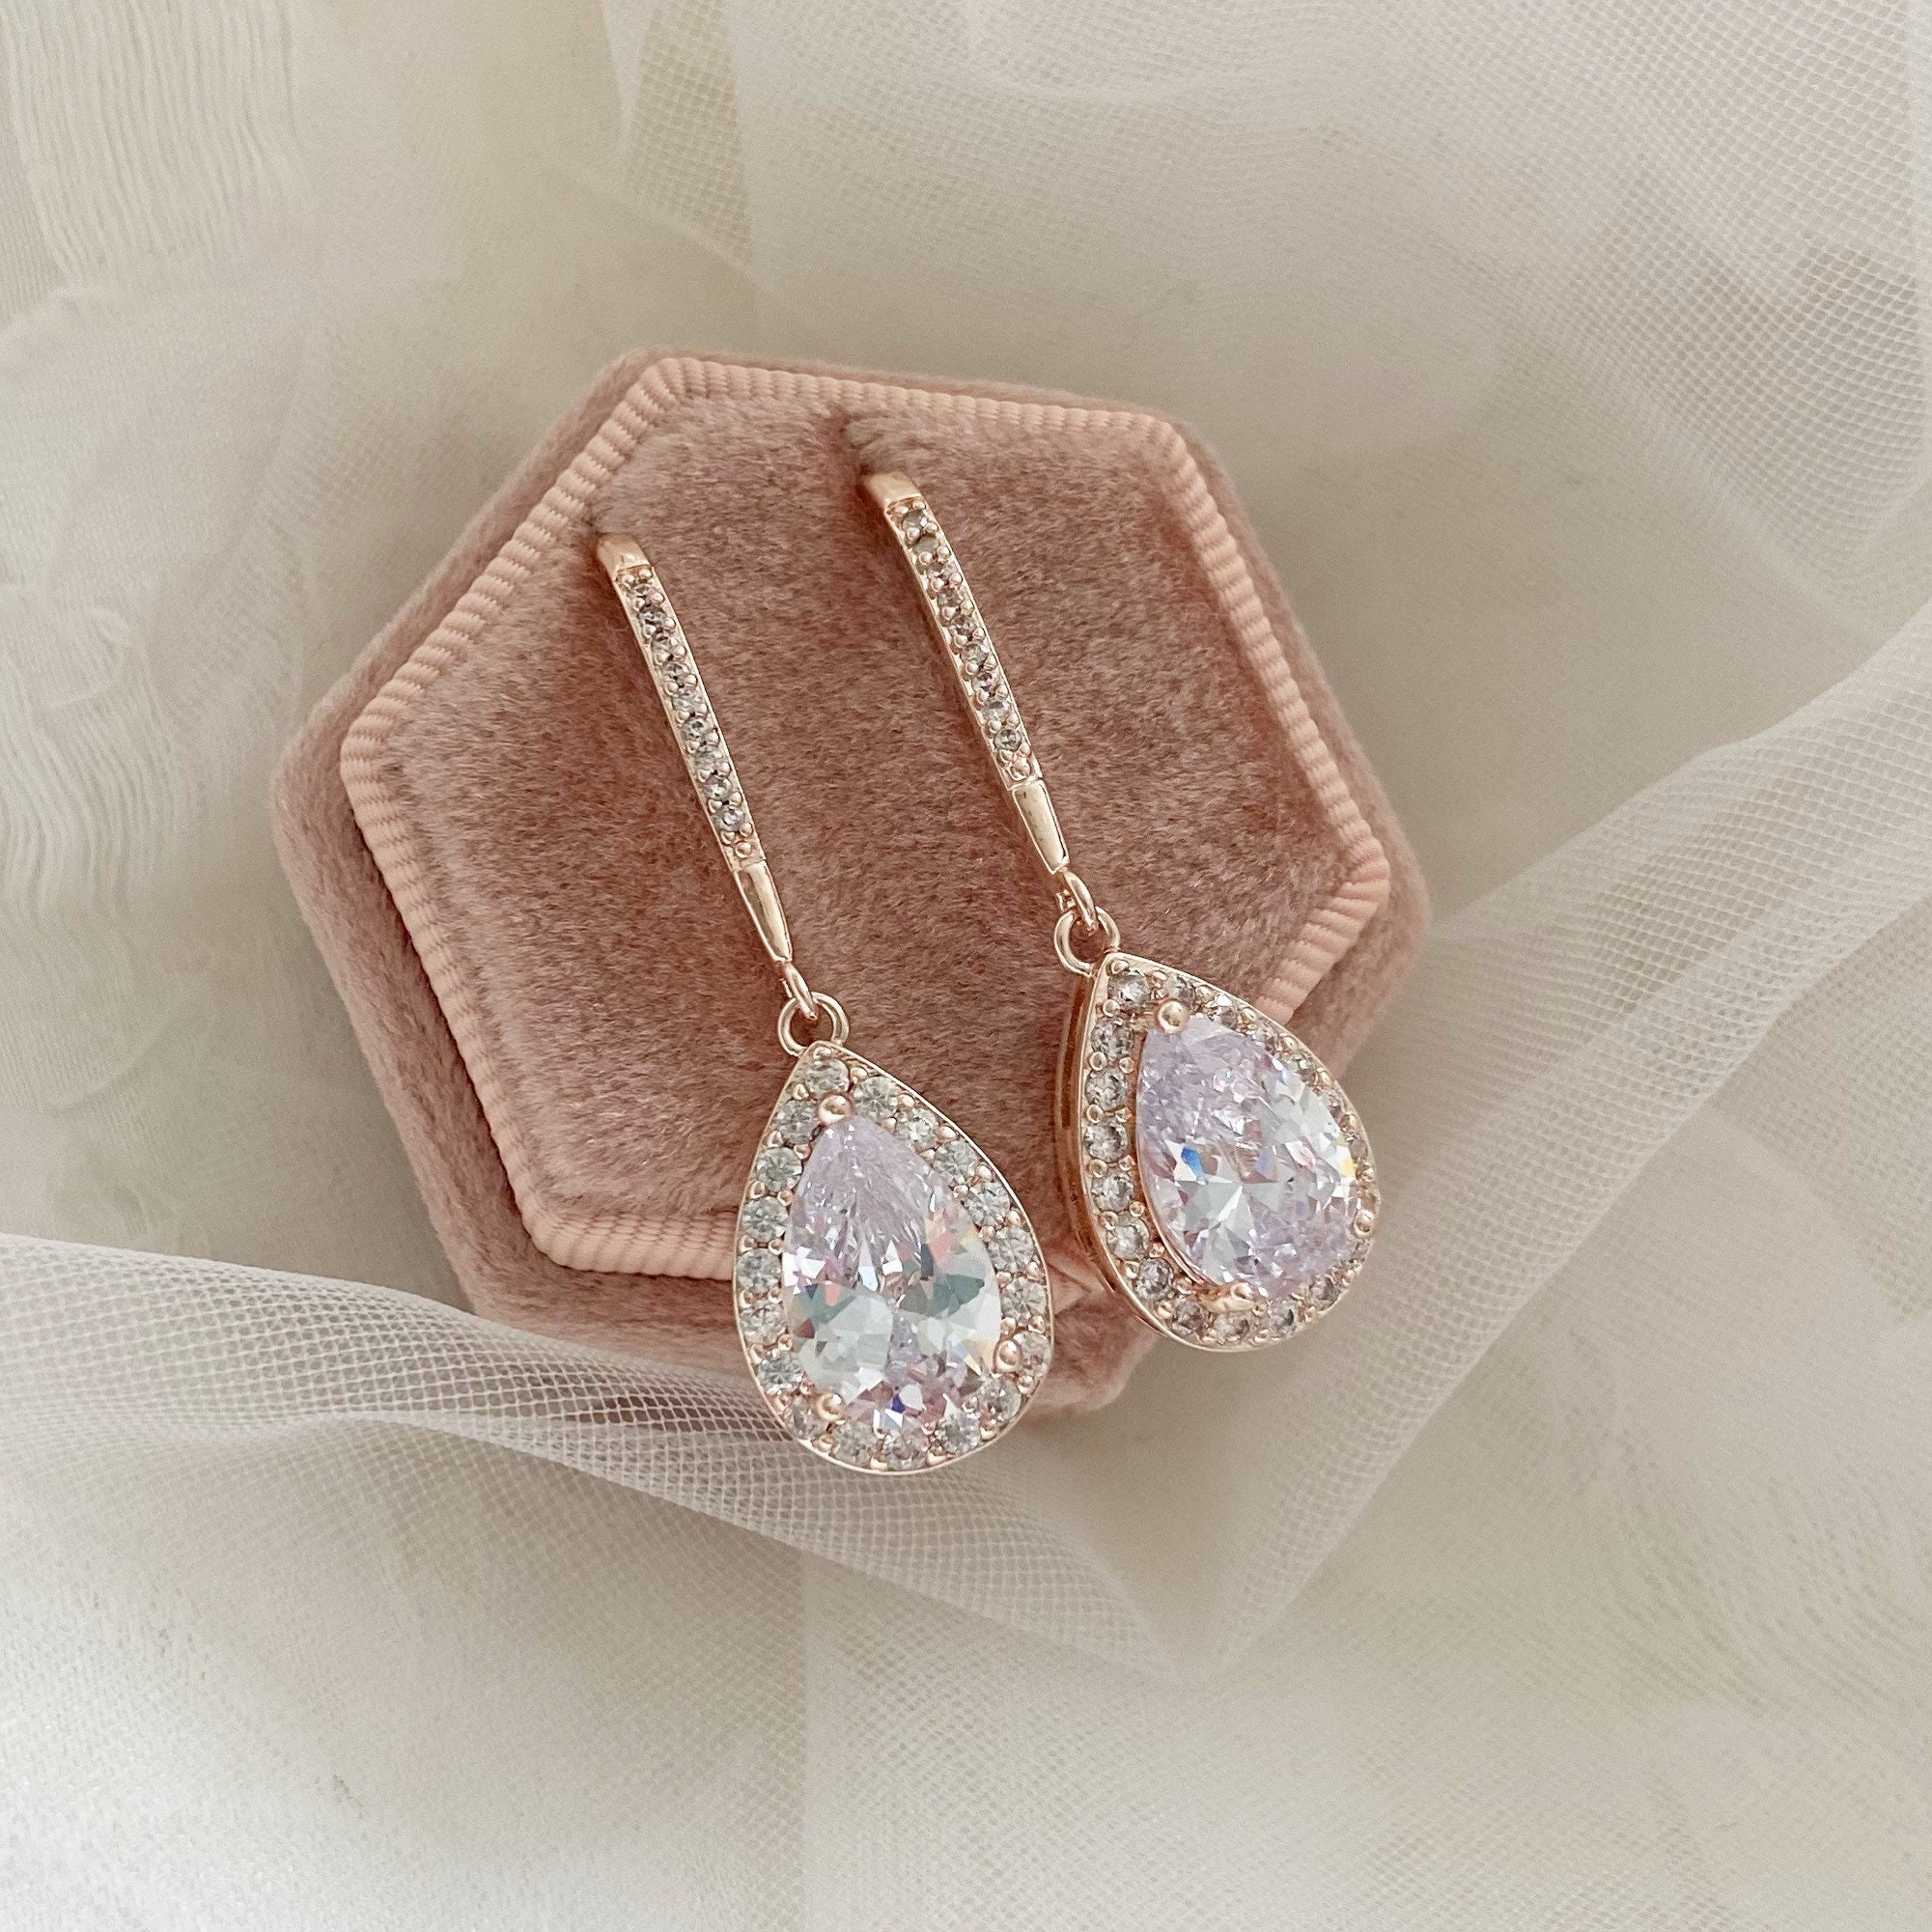 Buy Rose Gold Bridal Earrings, Wedding Dangle Earrings, Bridesmaid Earrings,  Teardrop Earrings, Crystal Drop Earrings, Wedding Jewelry, Emma Online in  India - Etsy